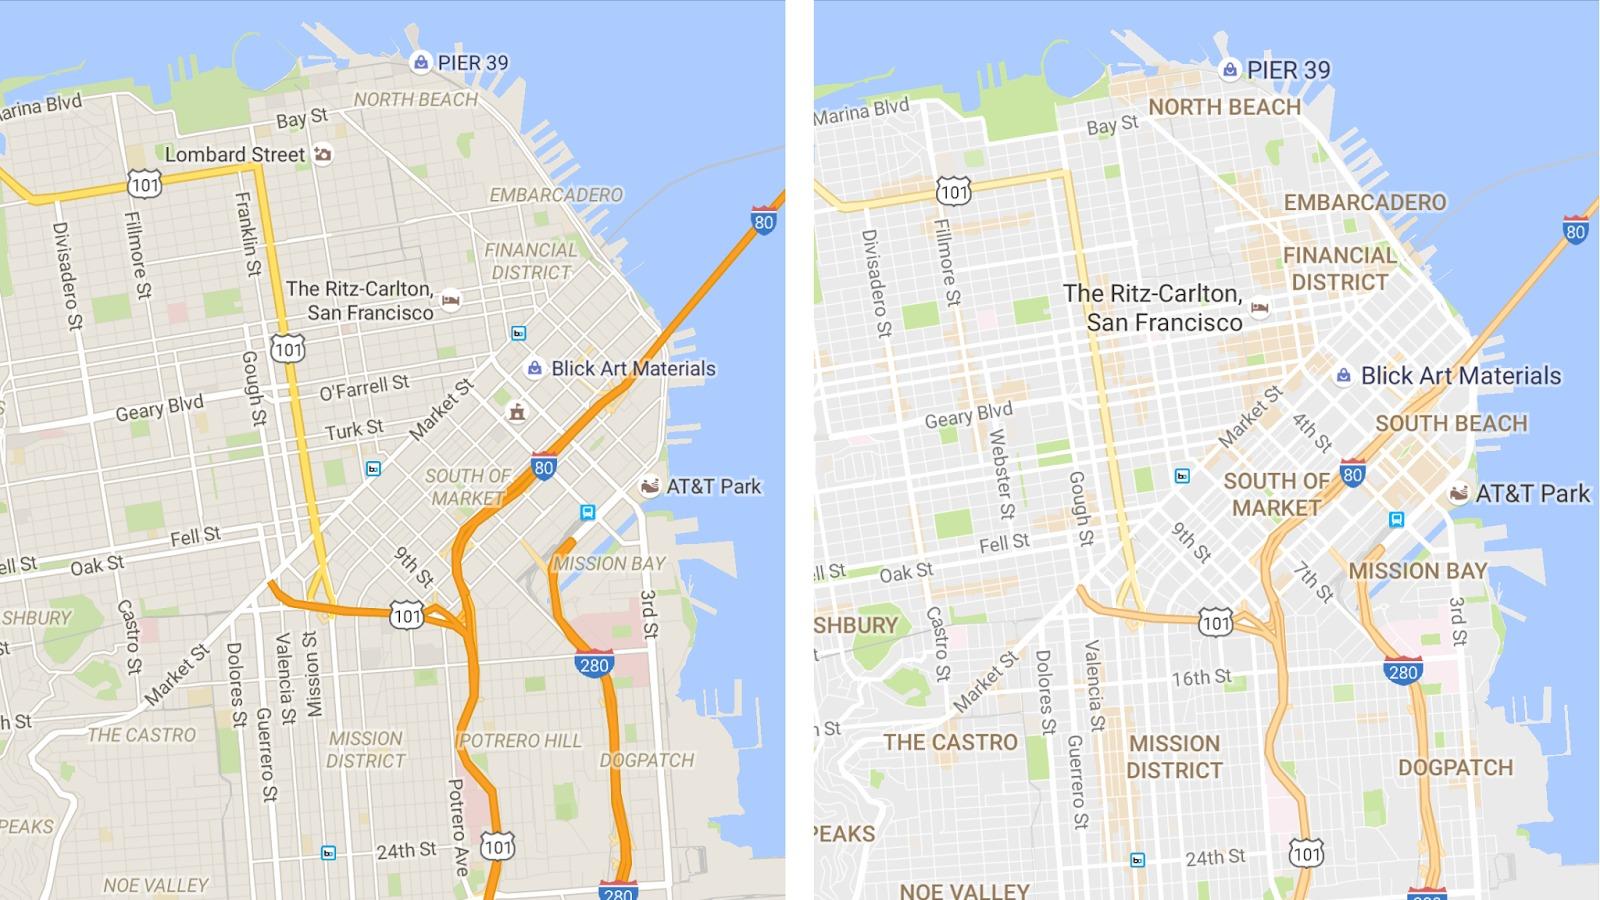 Googles karttjeneste har gjort det enklere å finne stedene der det «skjer»